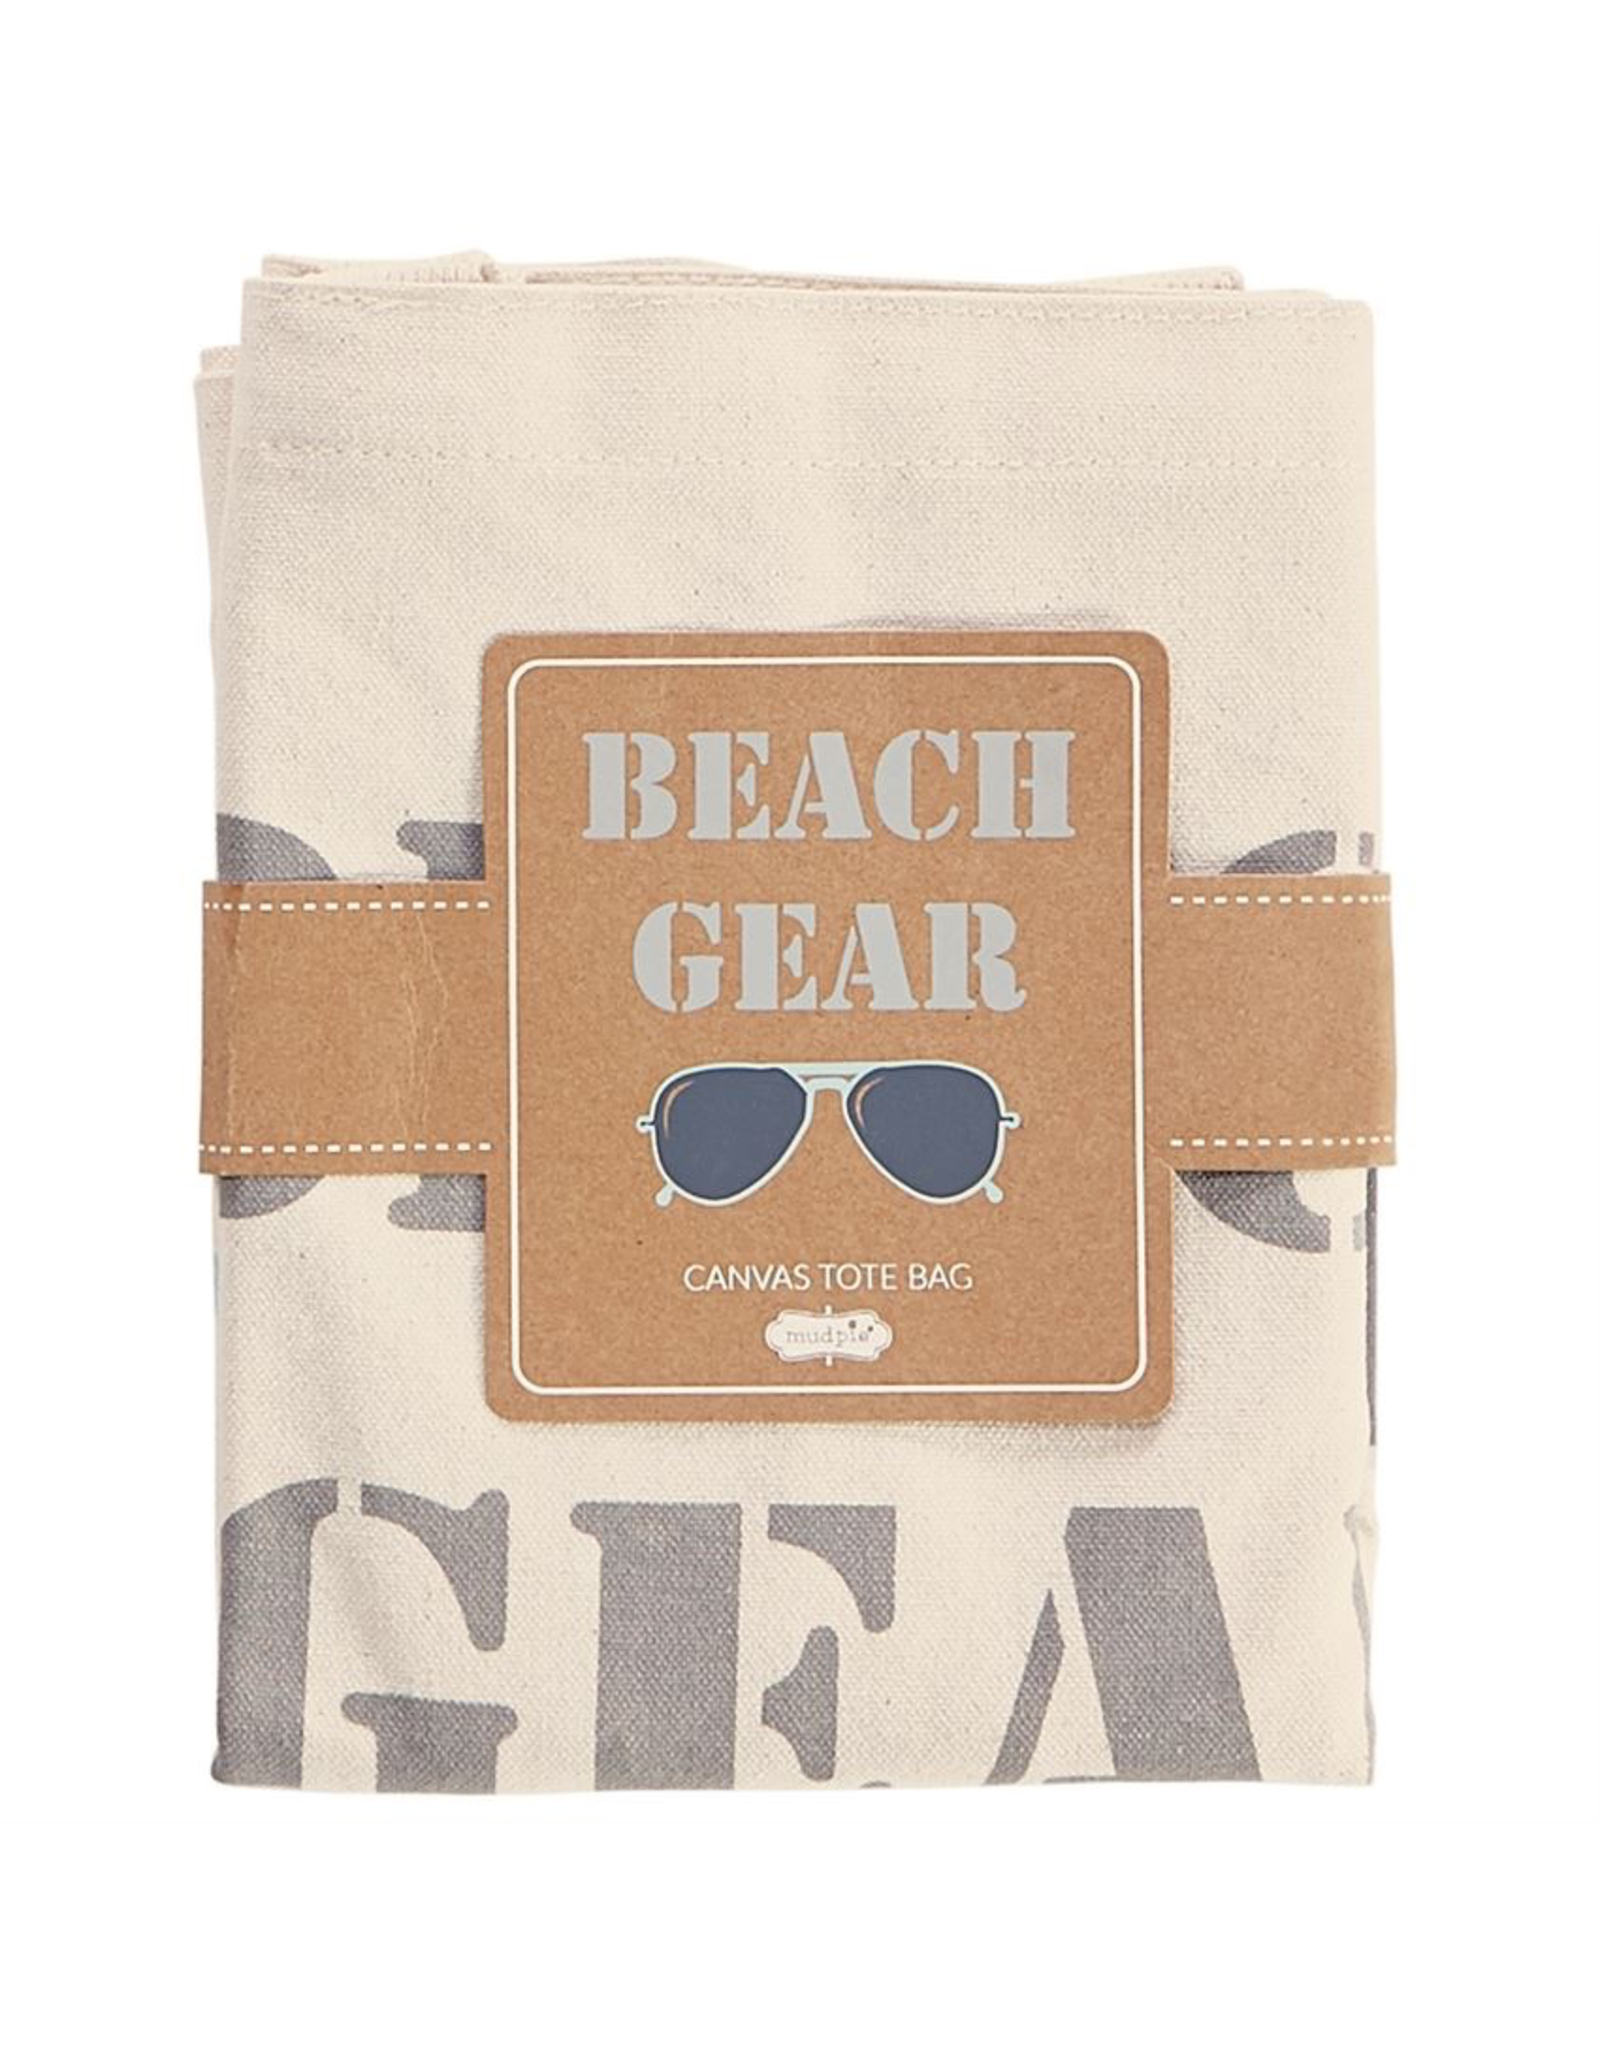 Mud Pie Canvas Beach Tote Bag w Handles - Beach Gear